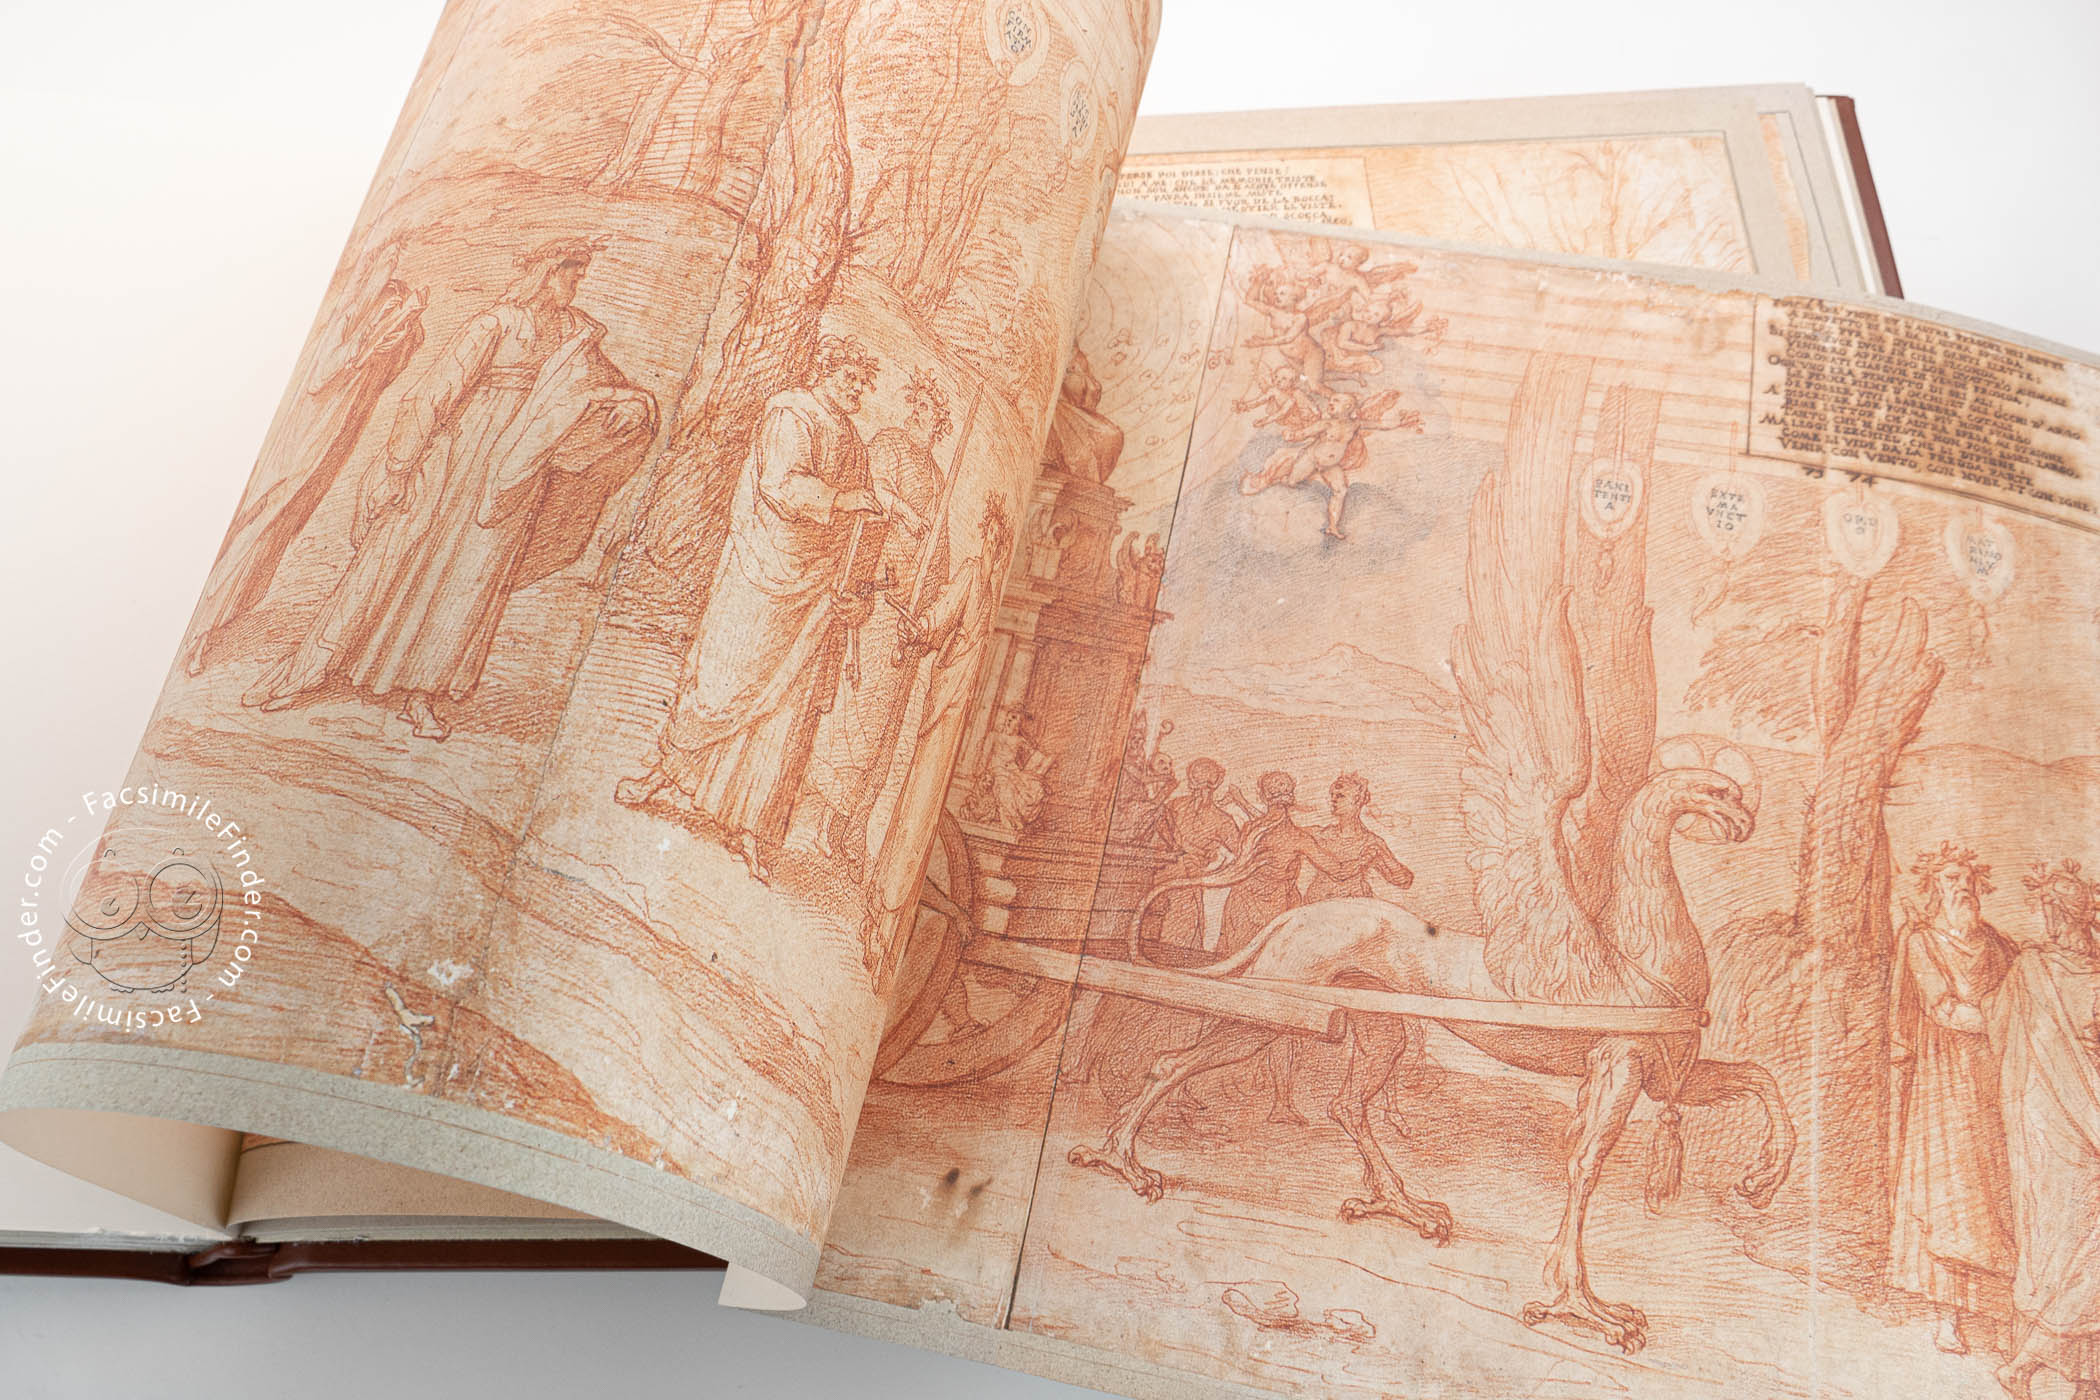 Dante Historiato by Federico Zuccaro « Facsimile edition